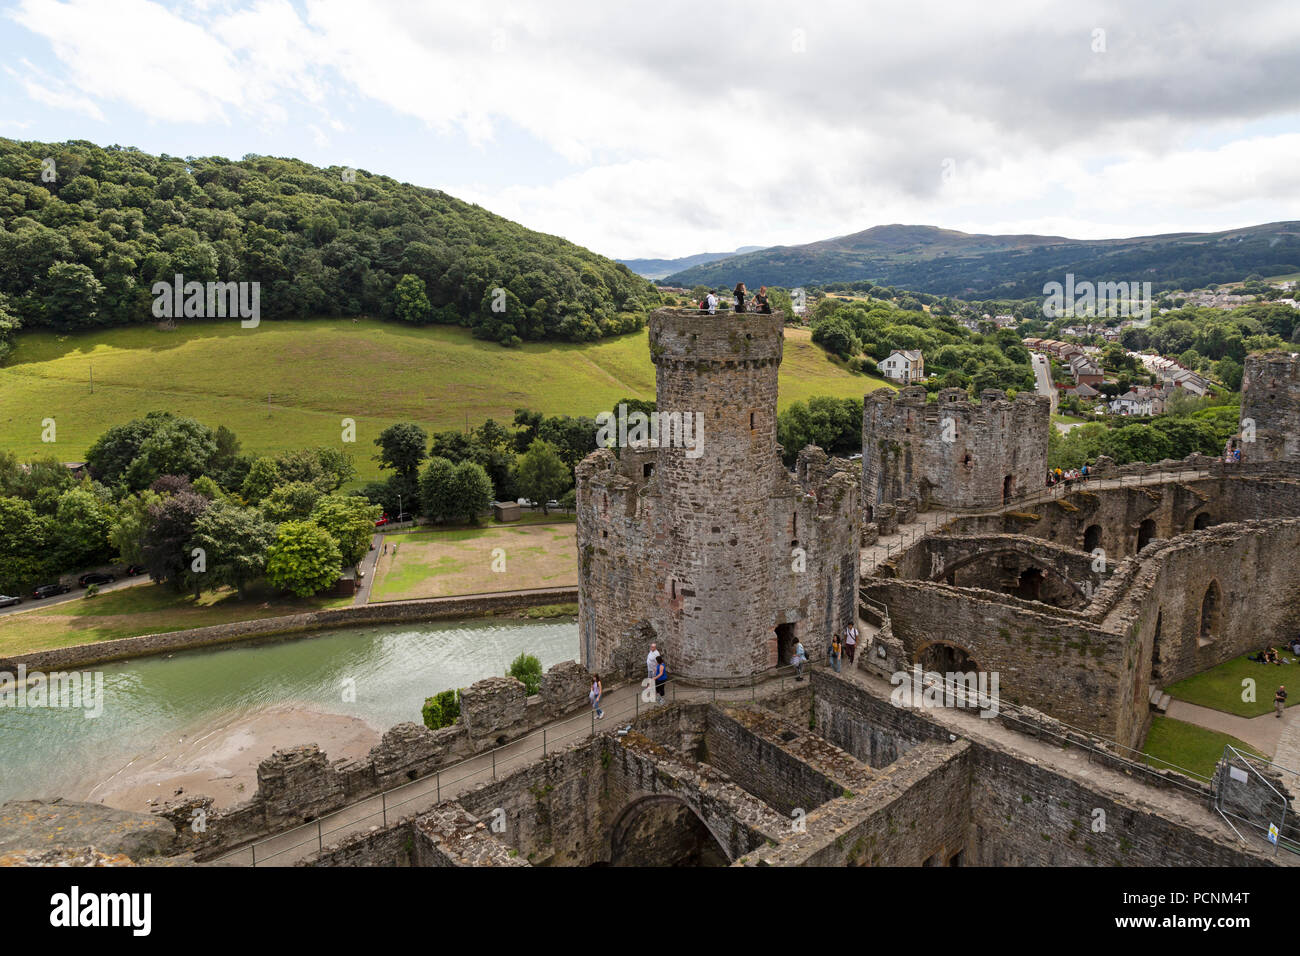 Une vue sur certains des bâtiments qui composent le Château de Conwy dans le Nord du Pays de Galles, avec les collines et les montagnes en arrière-plan. Banque D'Images